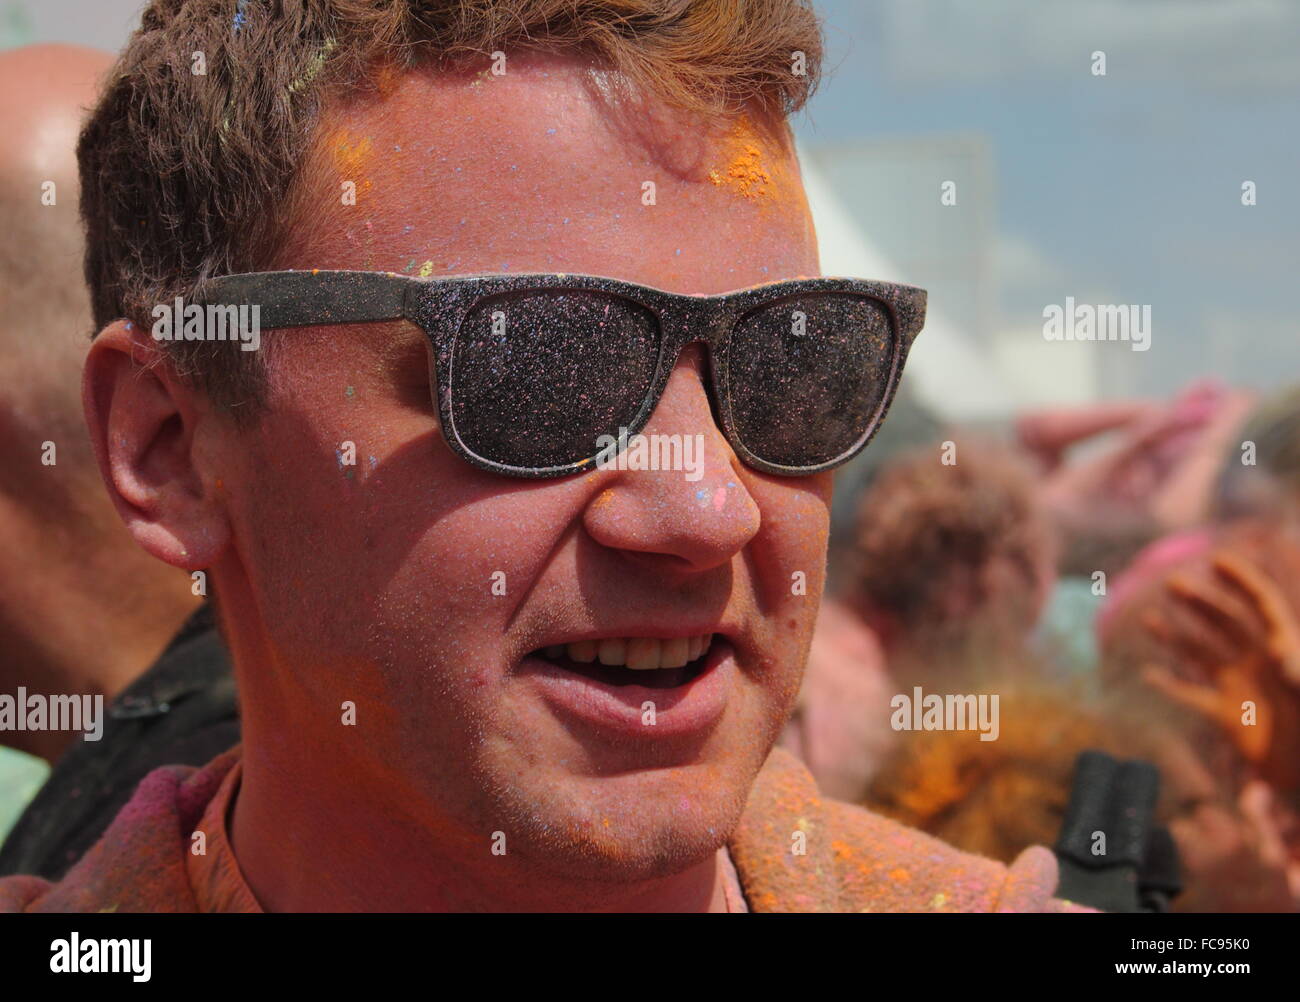 Un festival goer a une face orange après avoir pris part à un événement de lancement de peinture en poudre à l'Y PAS music festival, Derbyshire, Royaume-Uni Banque D'Images